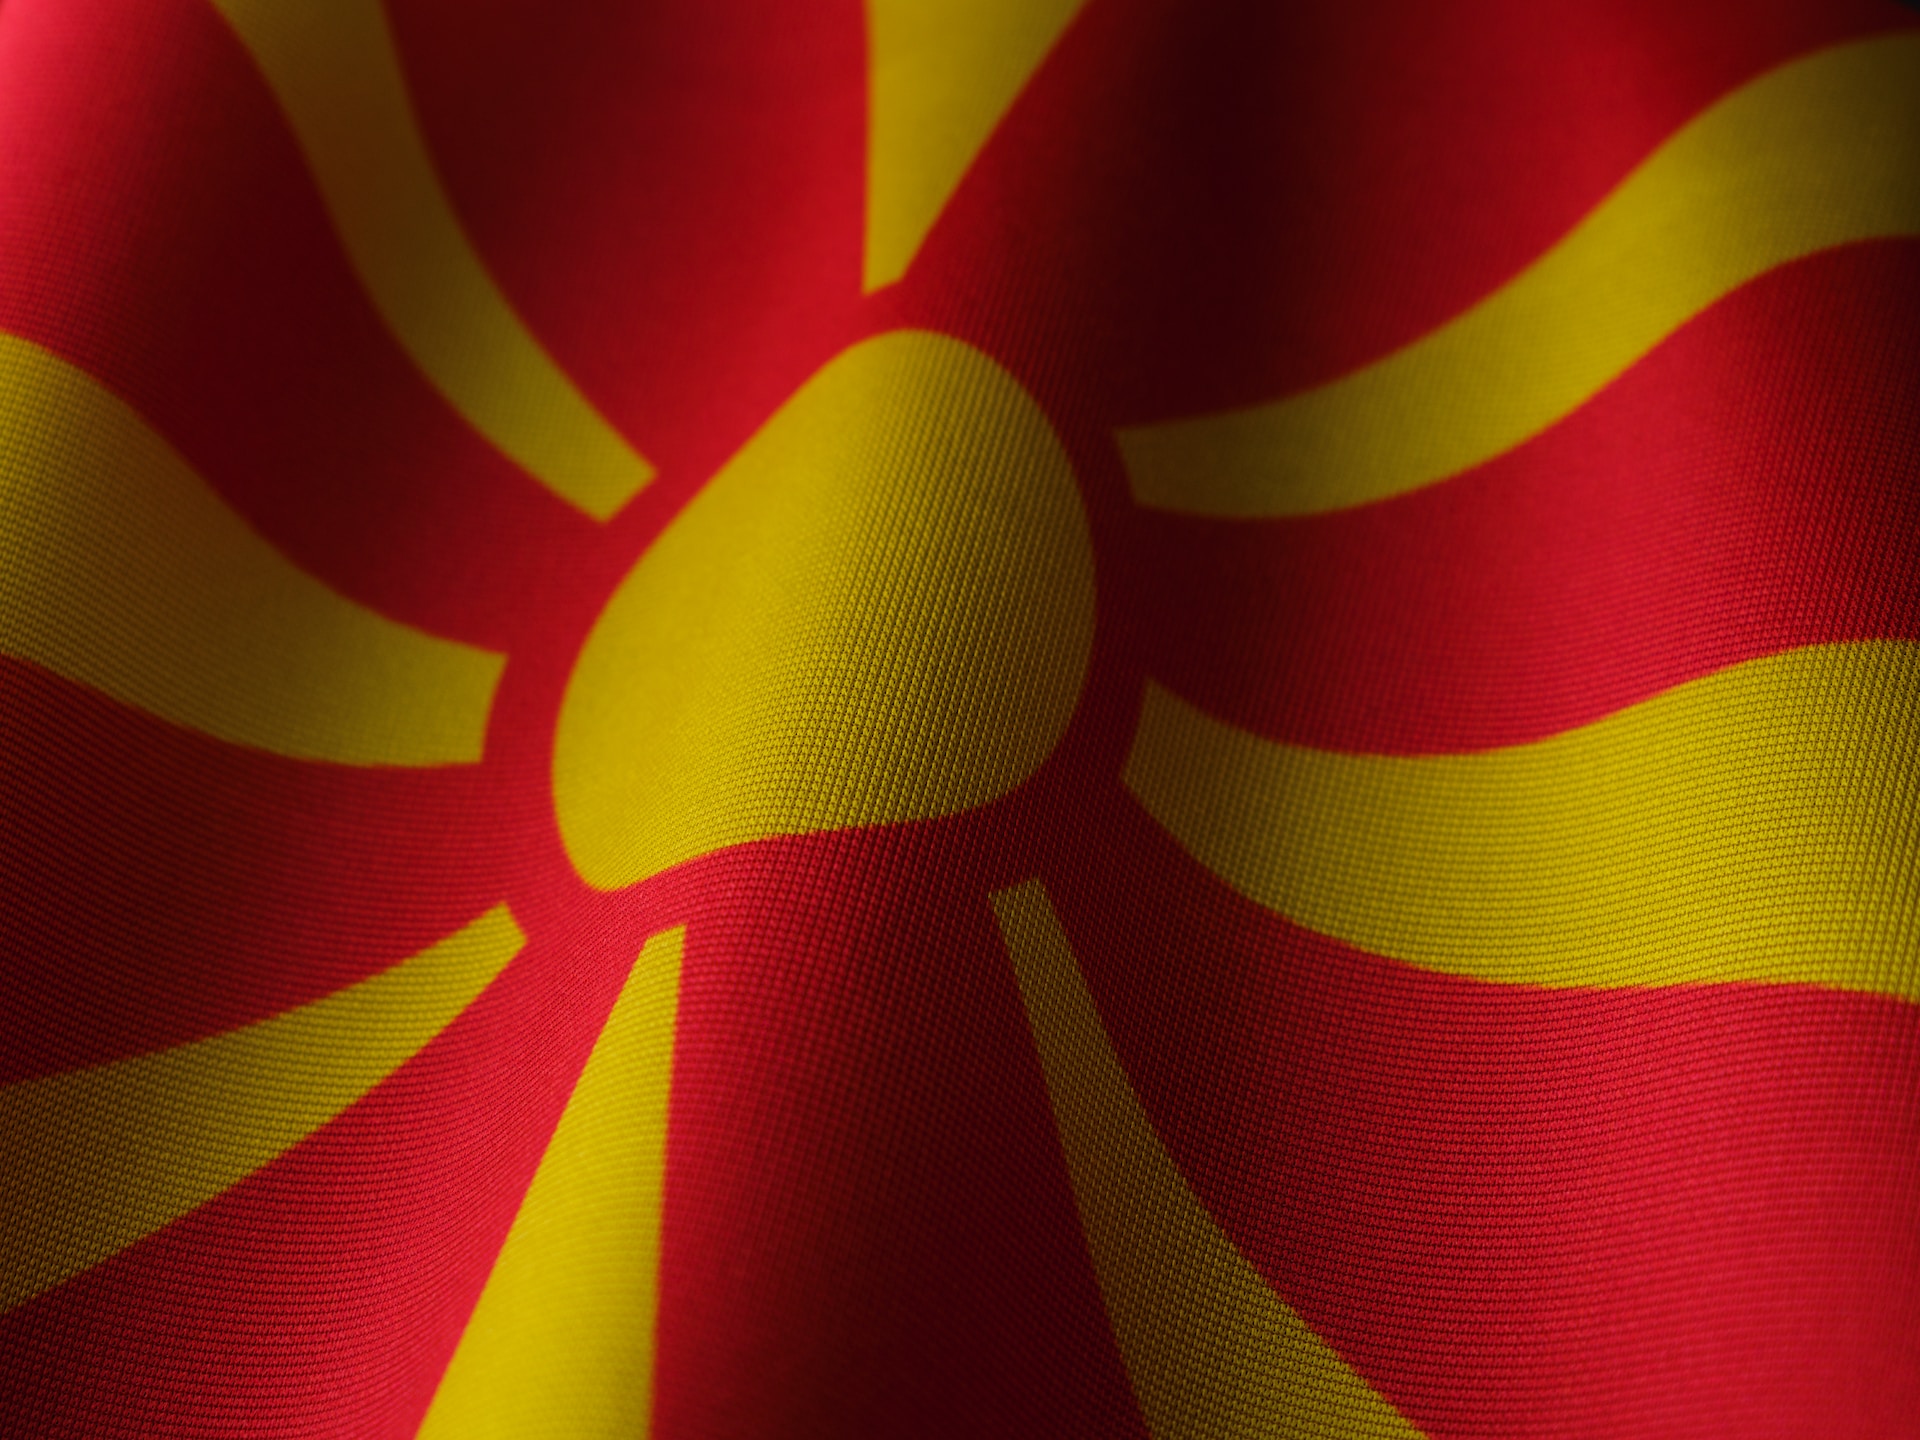 Major exports of North Macedonia